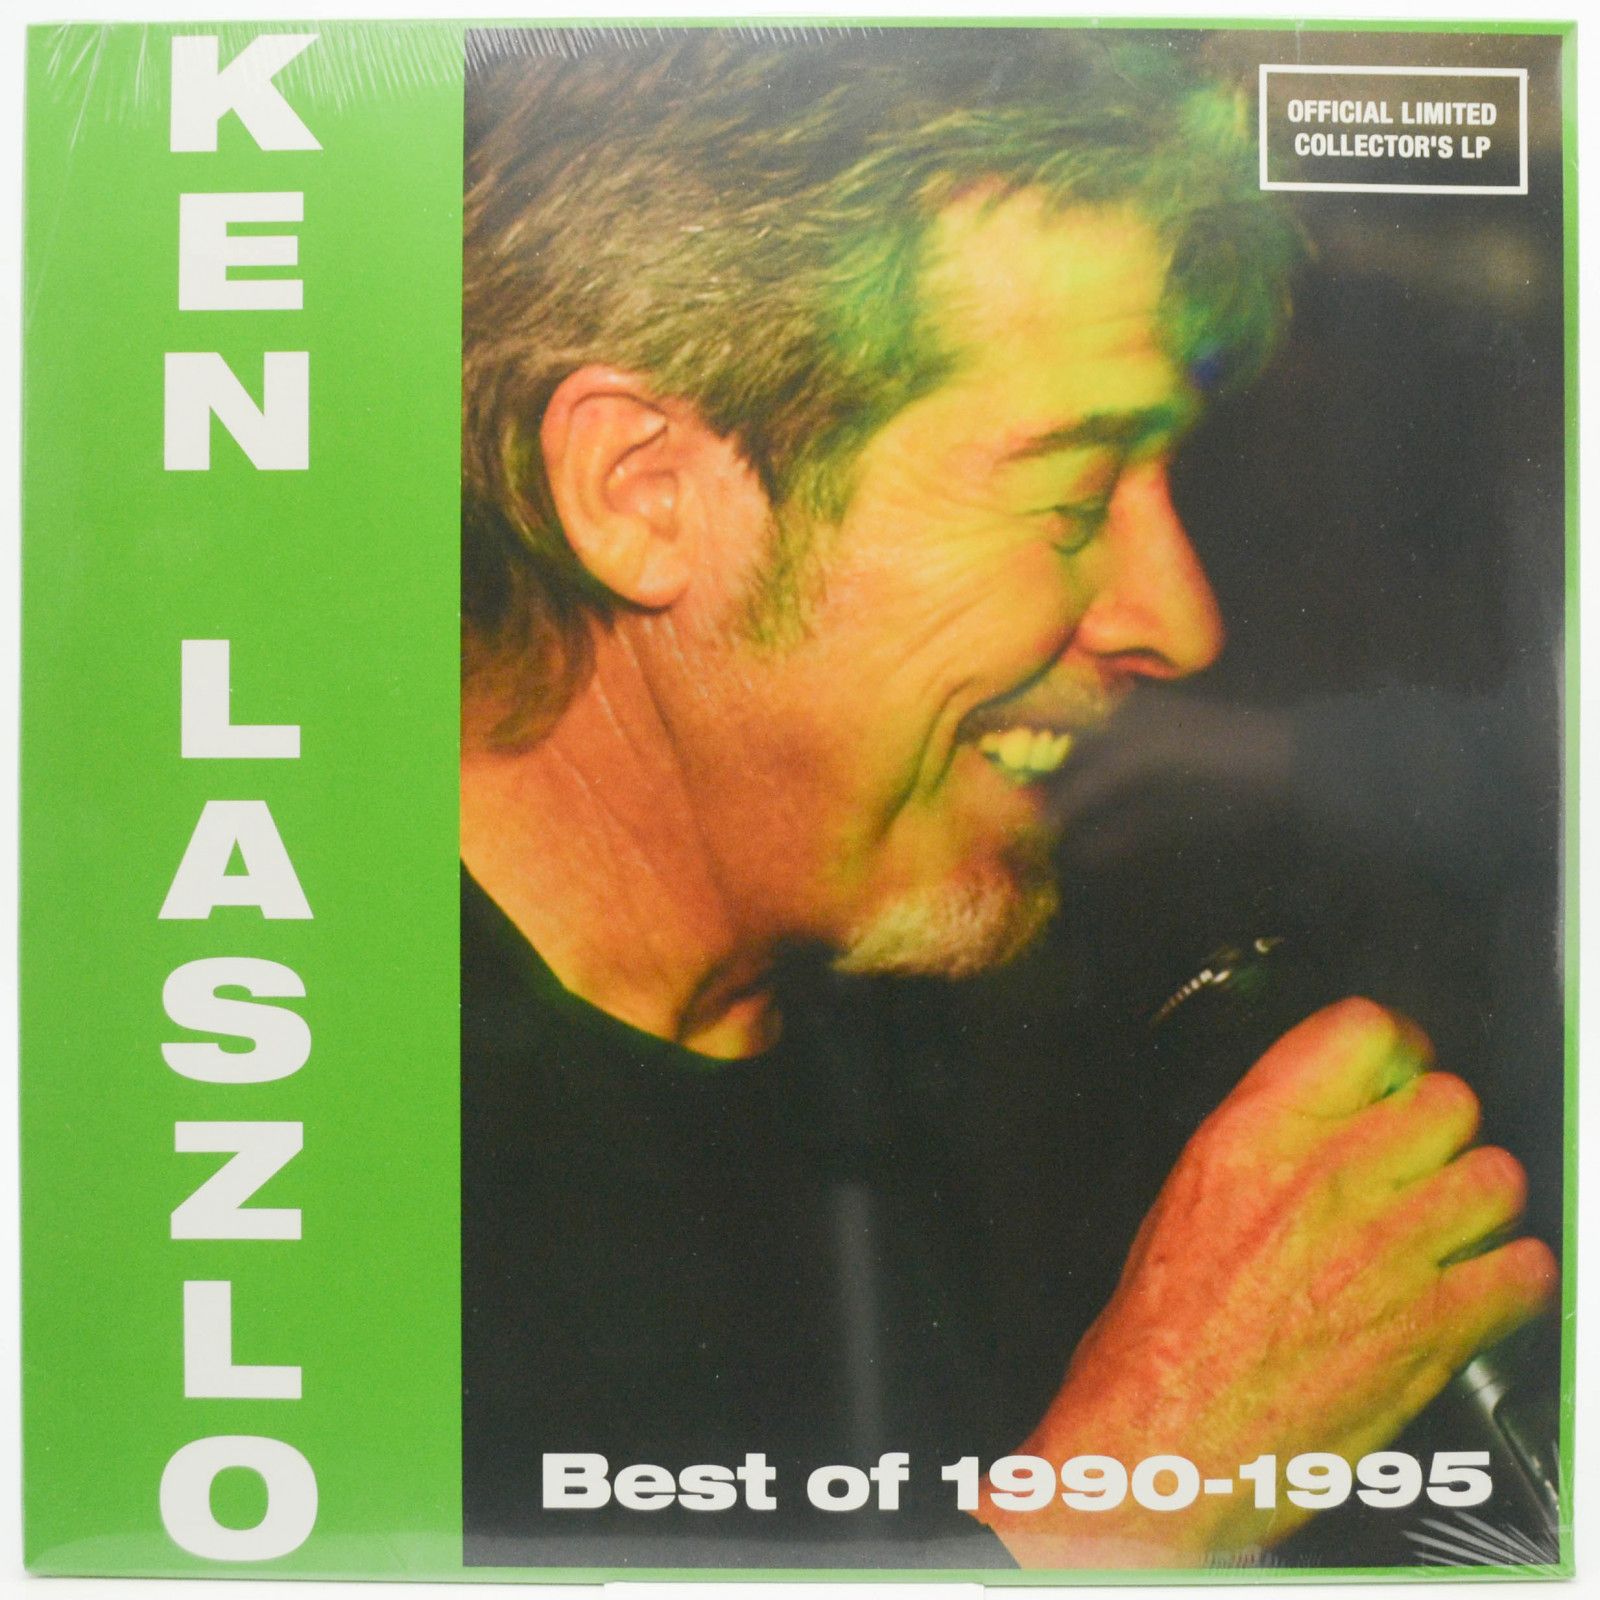 Ken Laszlo — Best Of 1990-1995, 2019